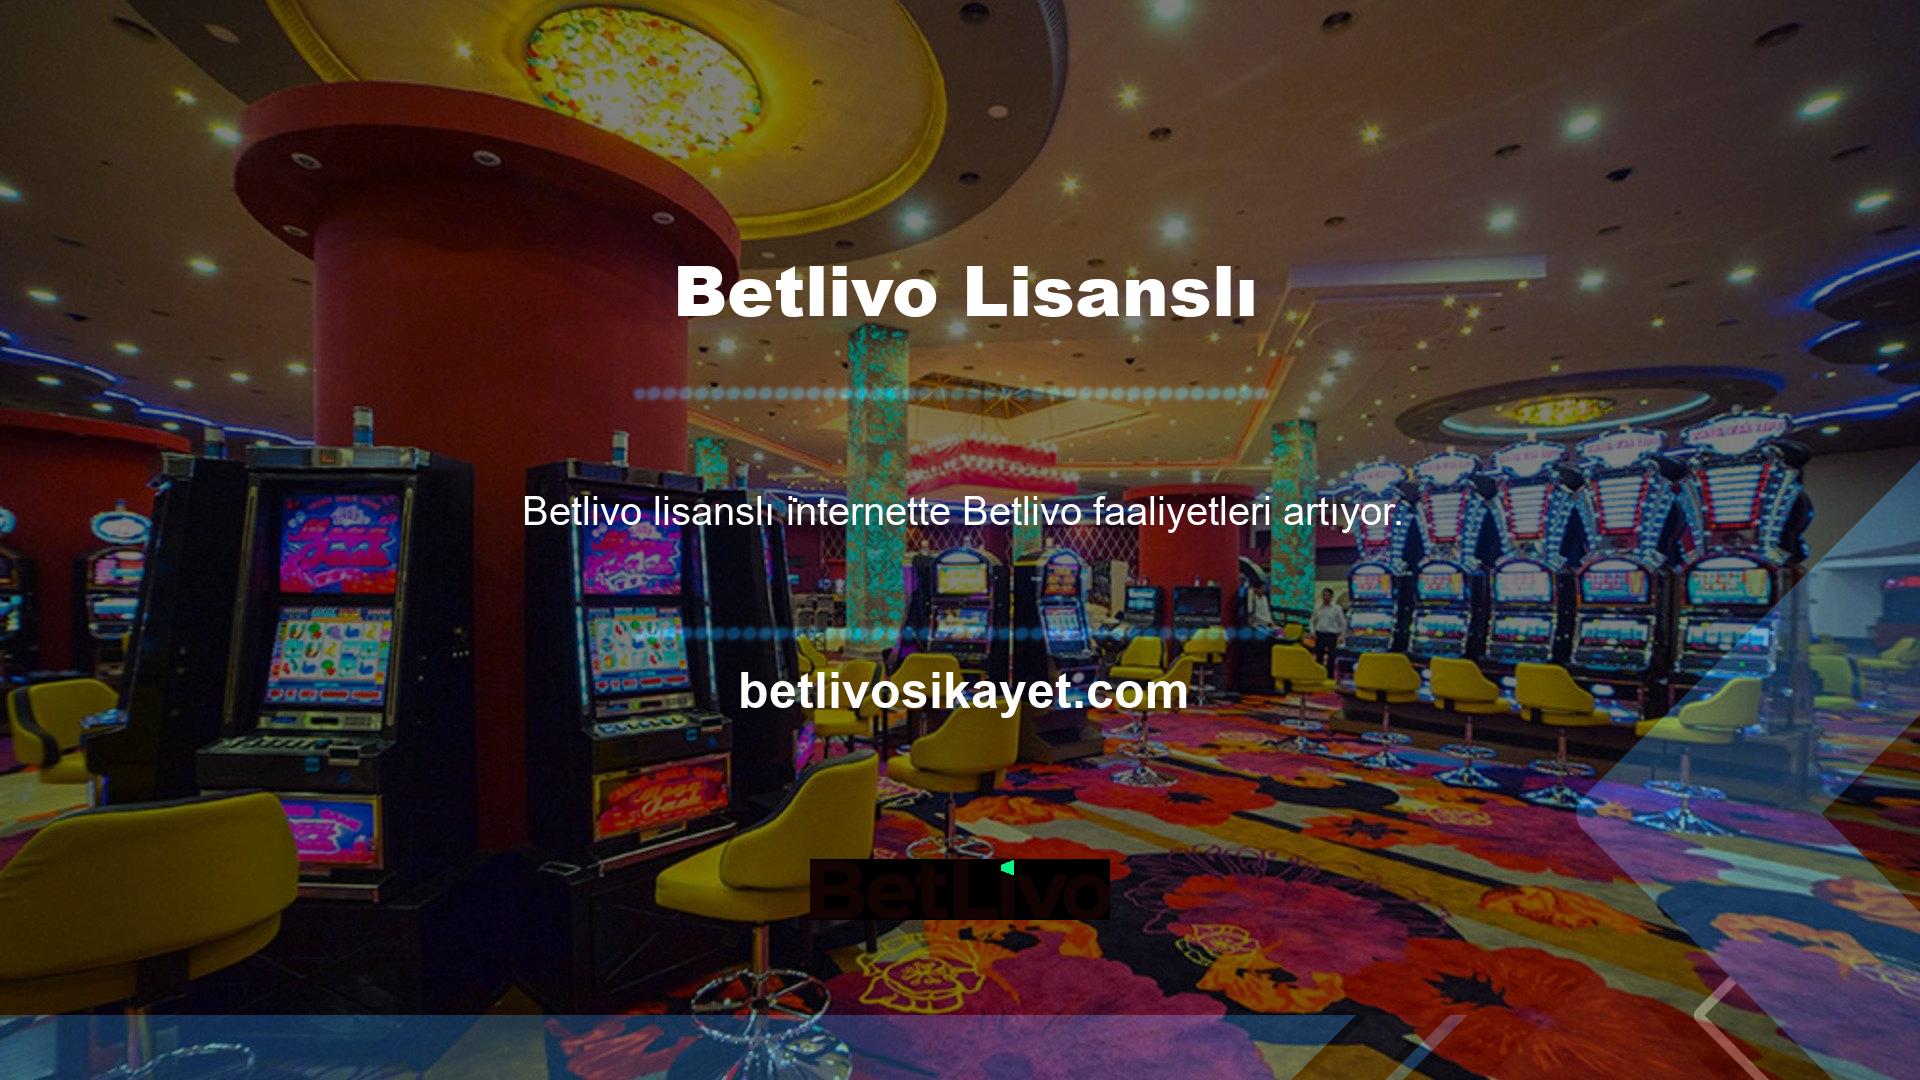 Kullanıcıların dikkatini çeken oyun şirketlerinden biri de Betlivo platformudur